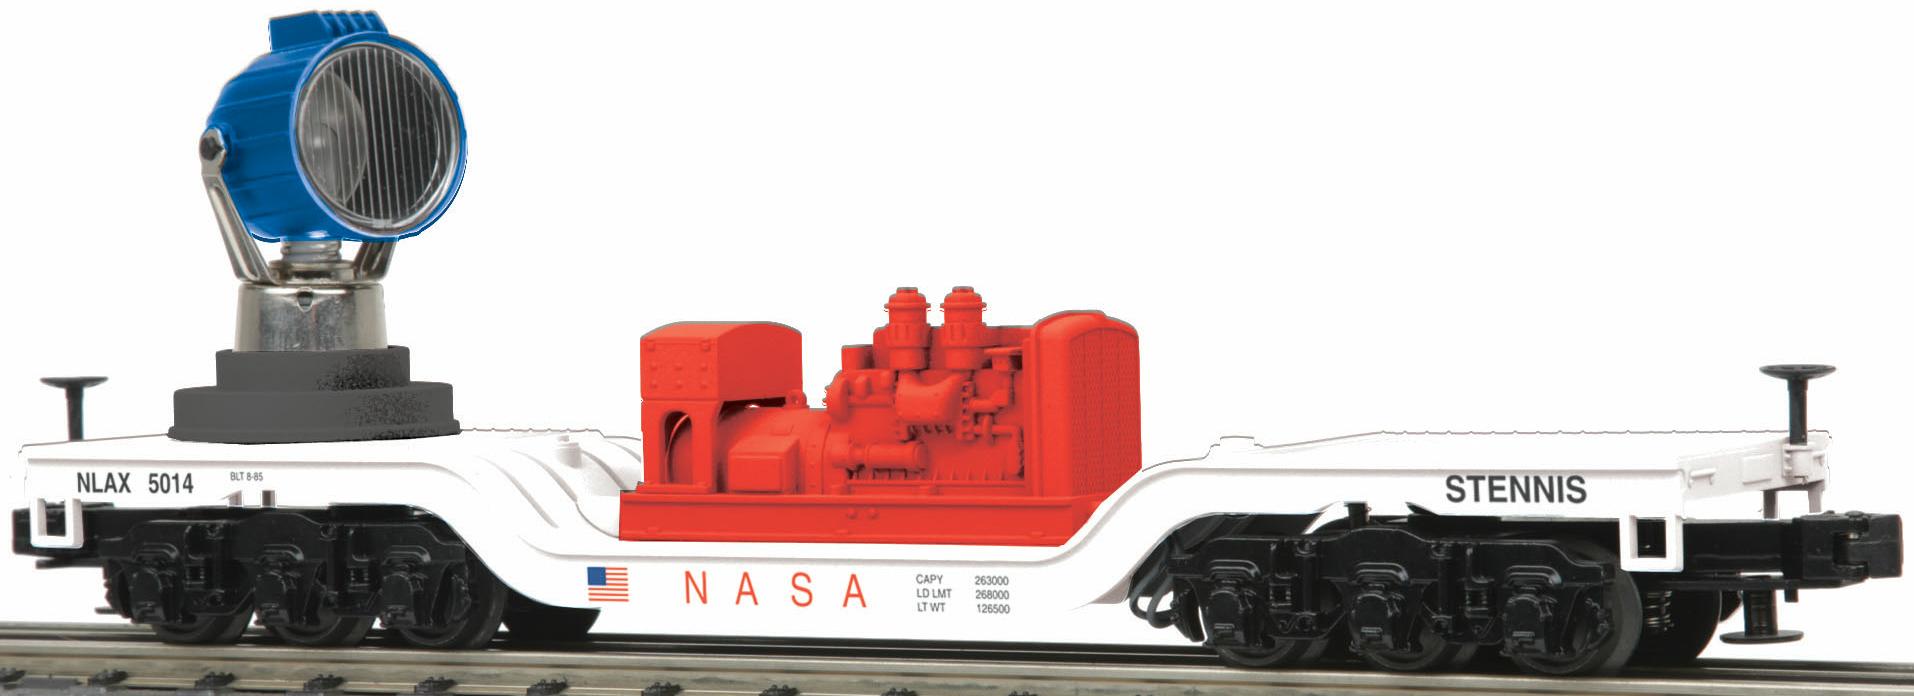 NASA Operating Searchlight Car image